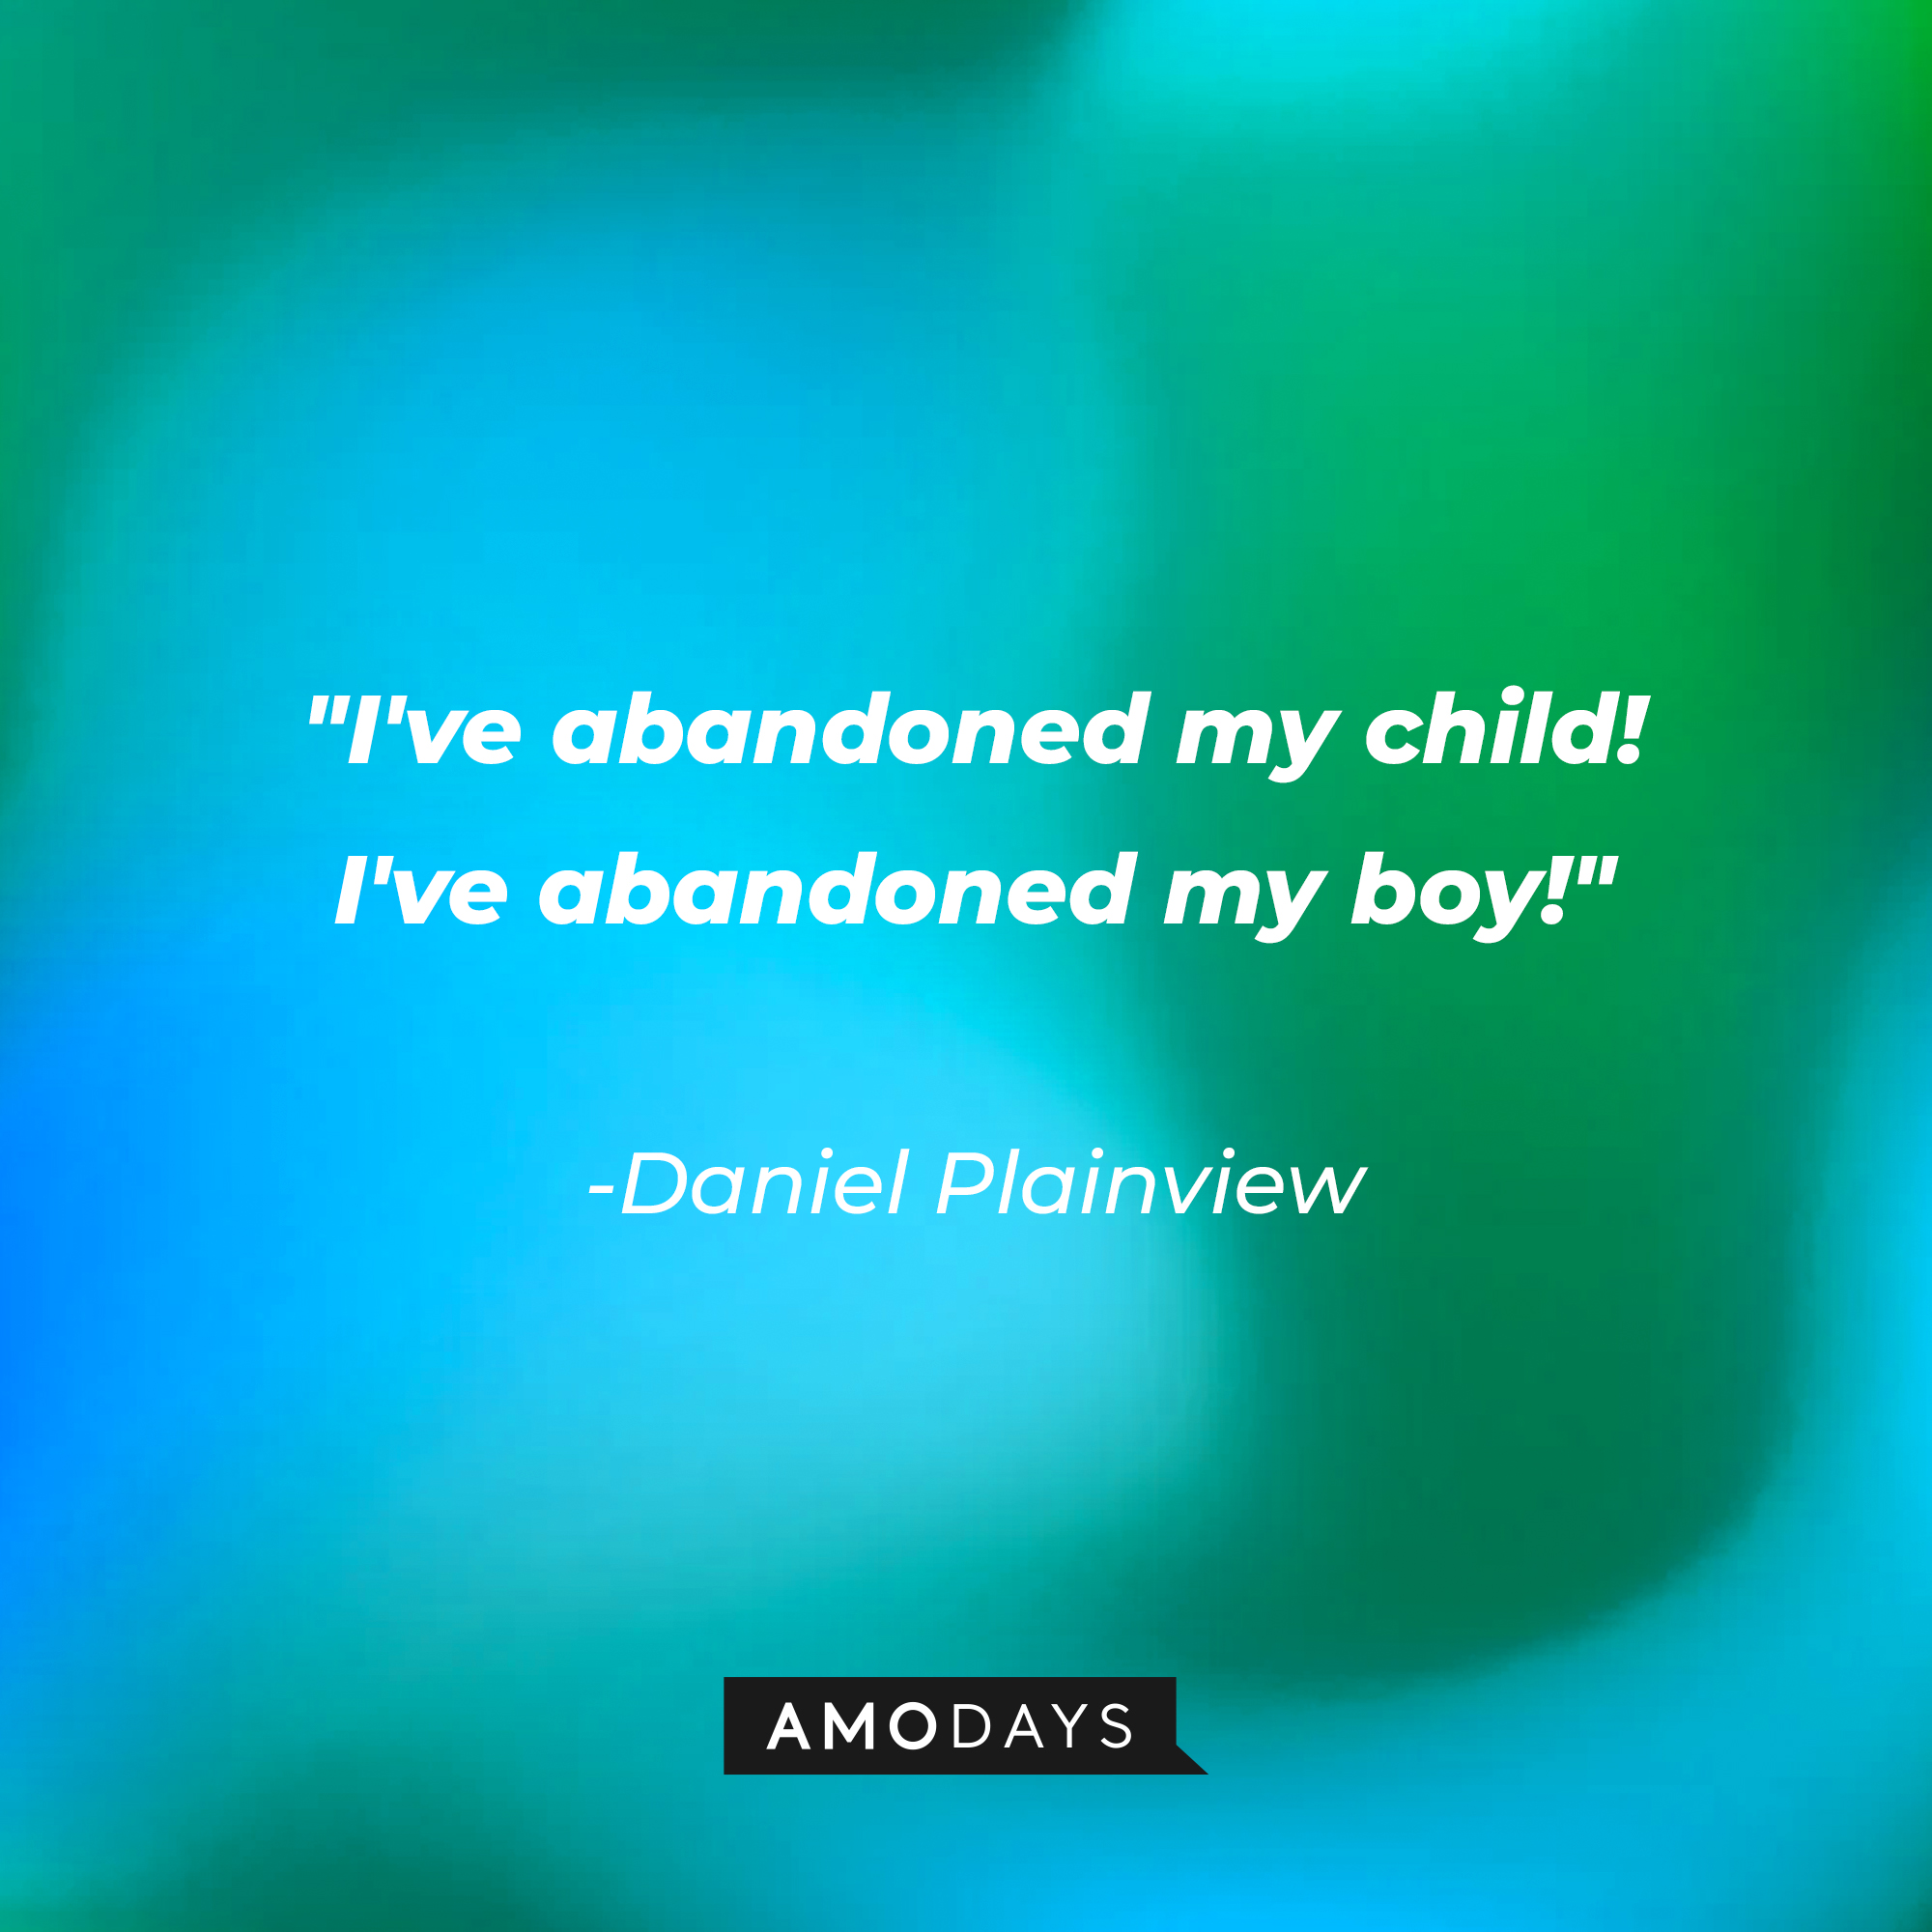 Daniel Plainview’s quote: "I've abandoned my child! I've abandoned my boy!" | Source: AmoDays